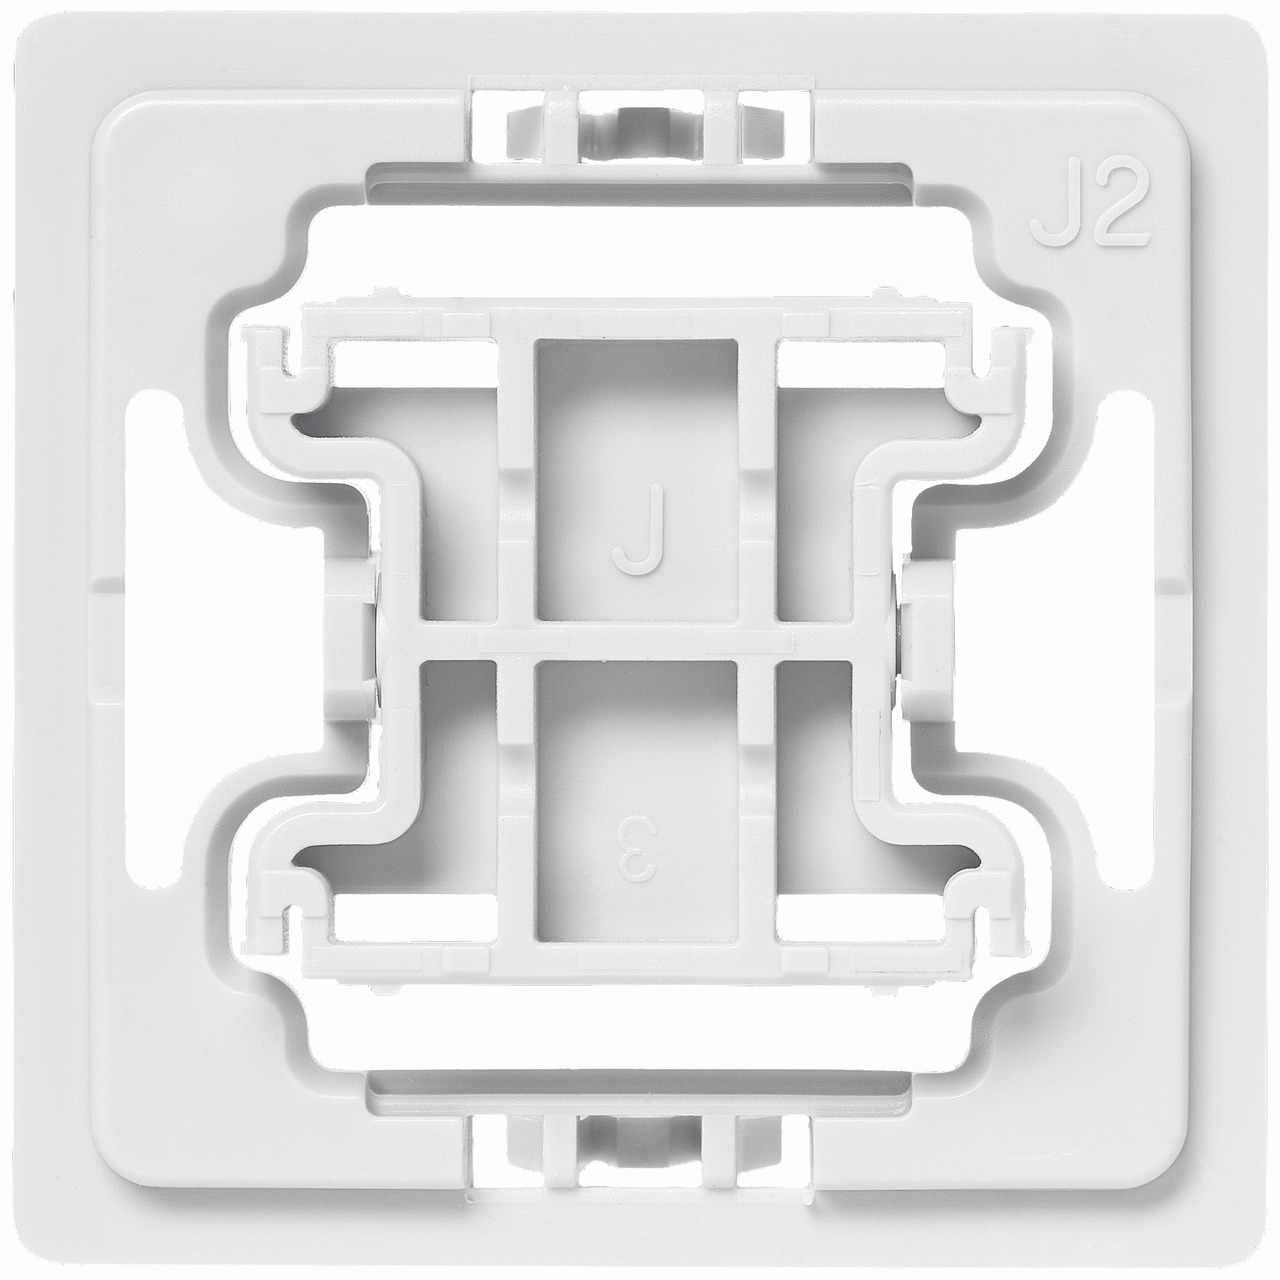 Installationsadapter für Jung-Schalter- J2- 1 Stück- für Smart Home - Hausautomation